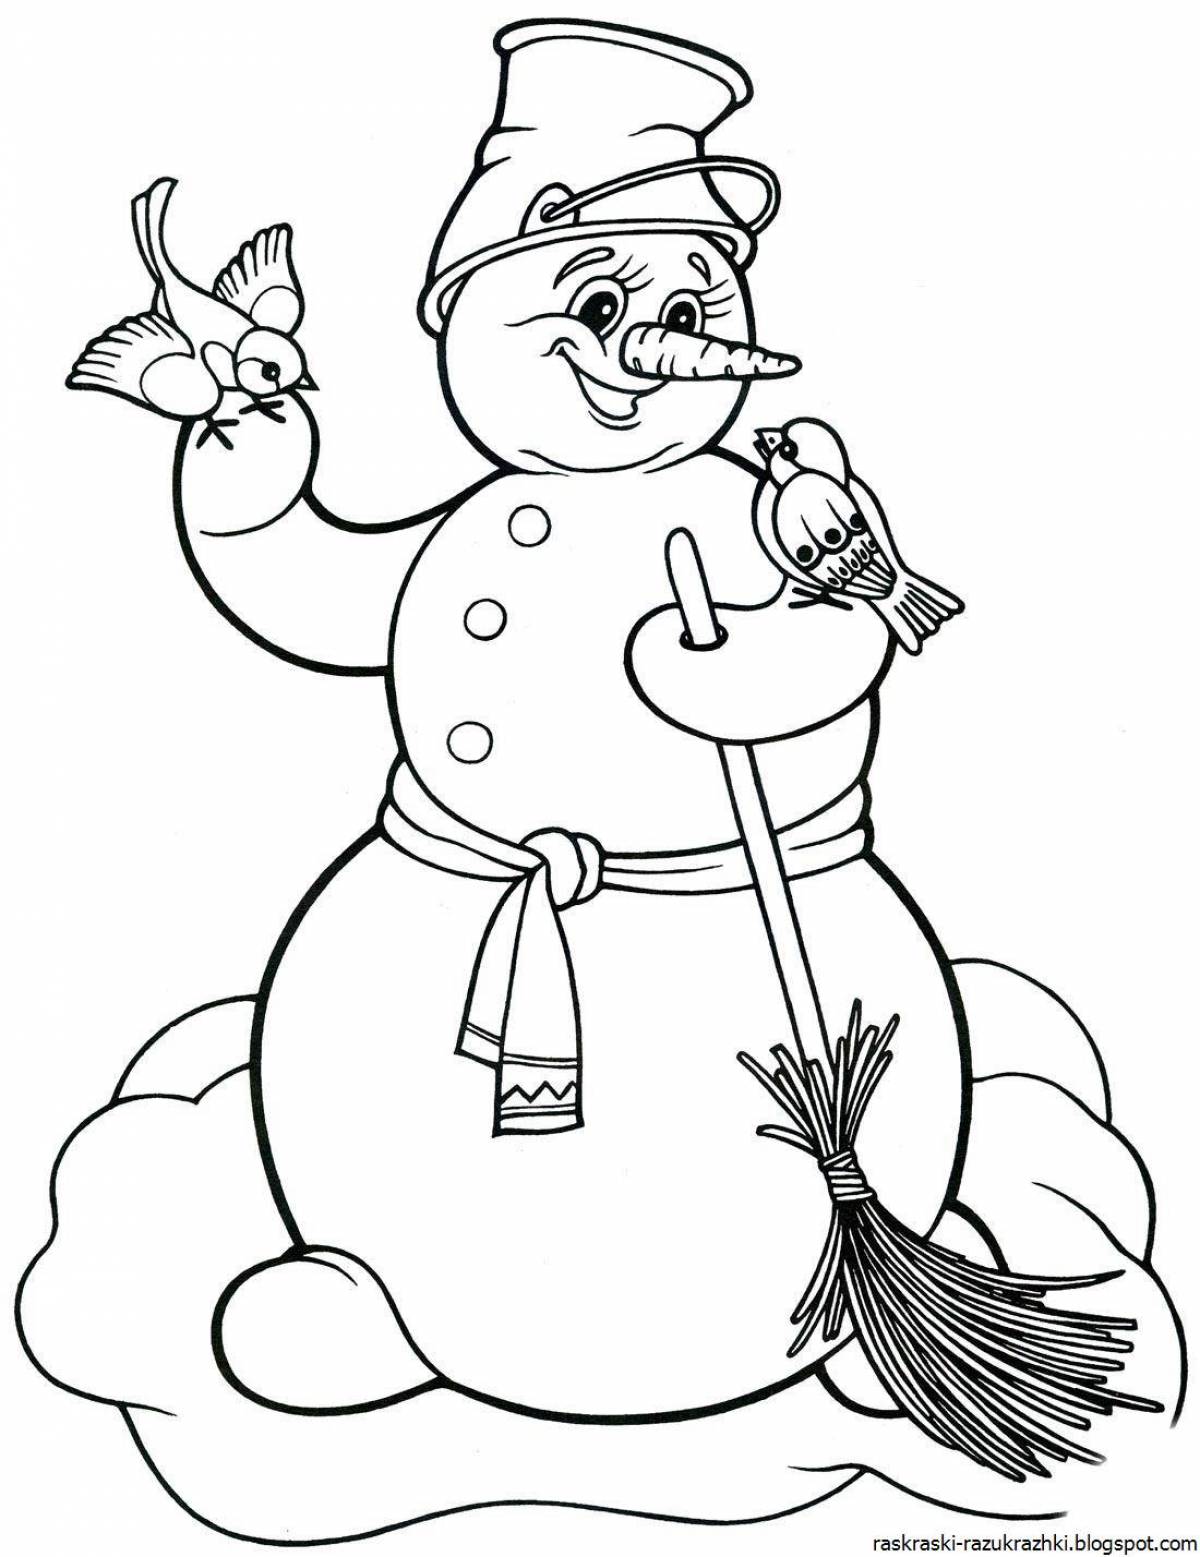 Сказочный снеговик раскраски для детей